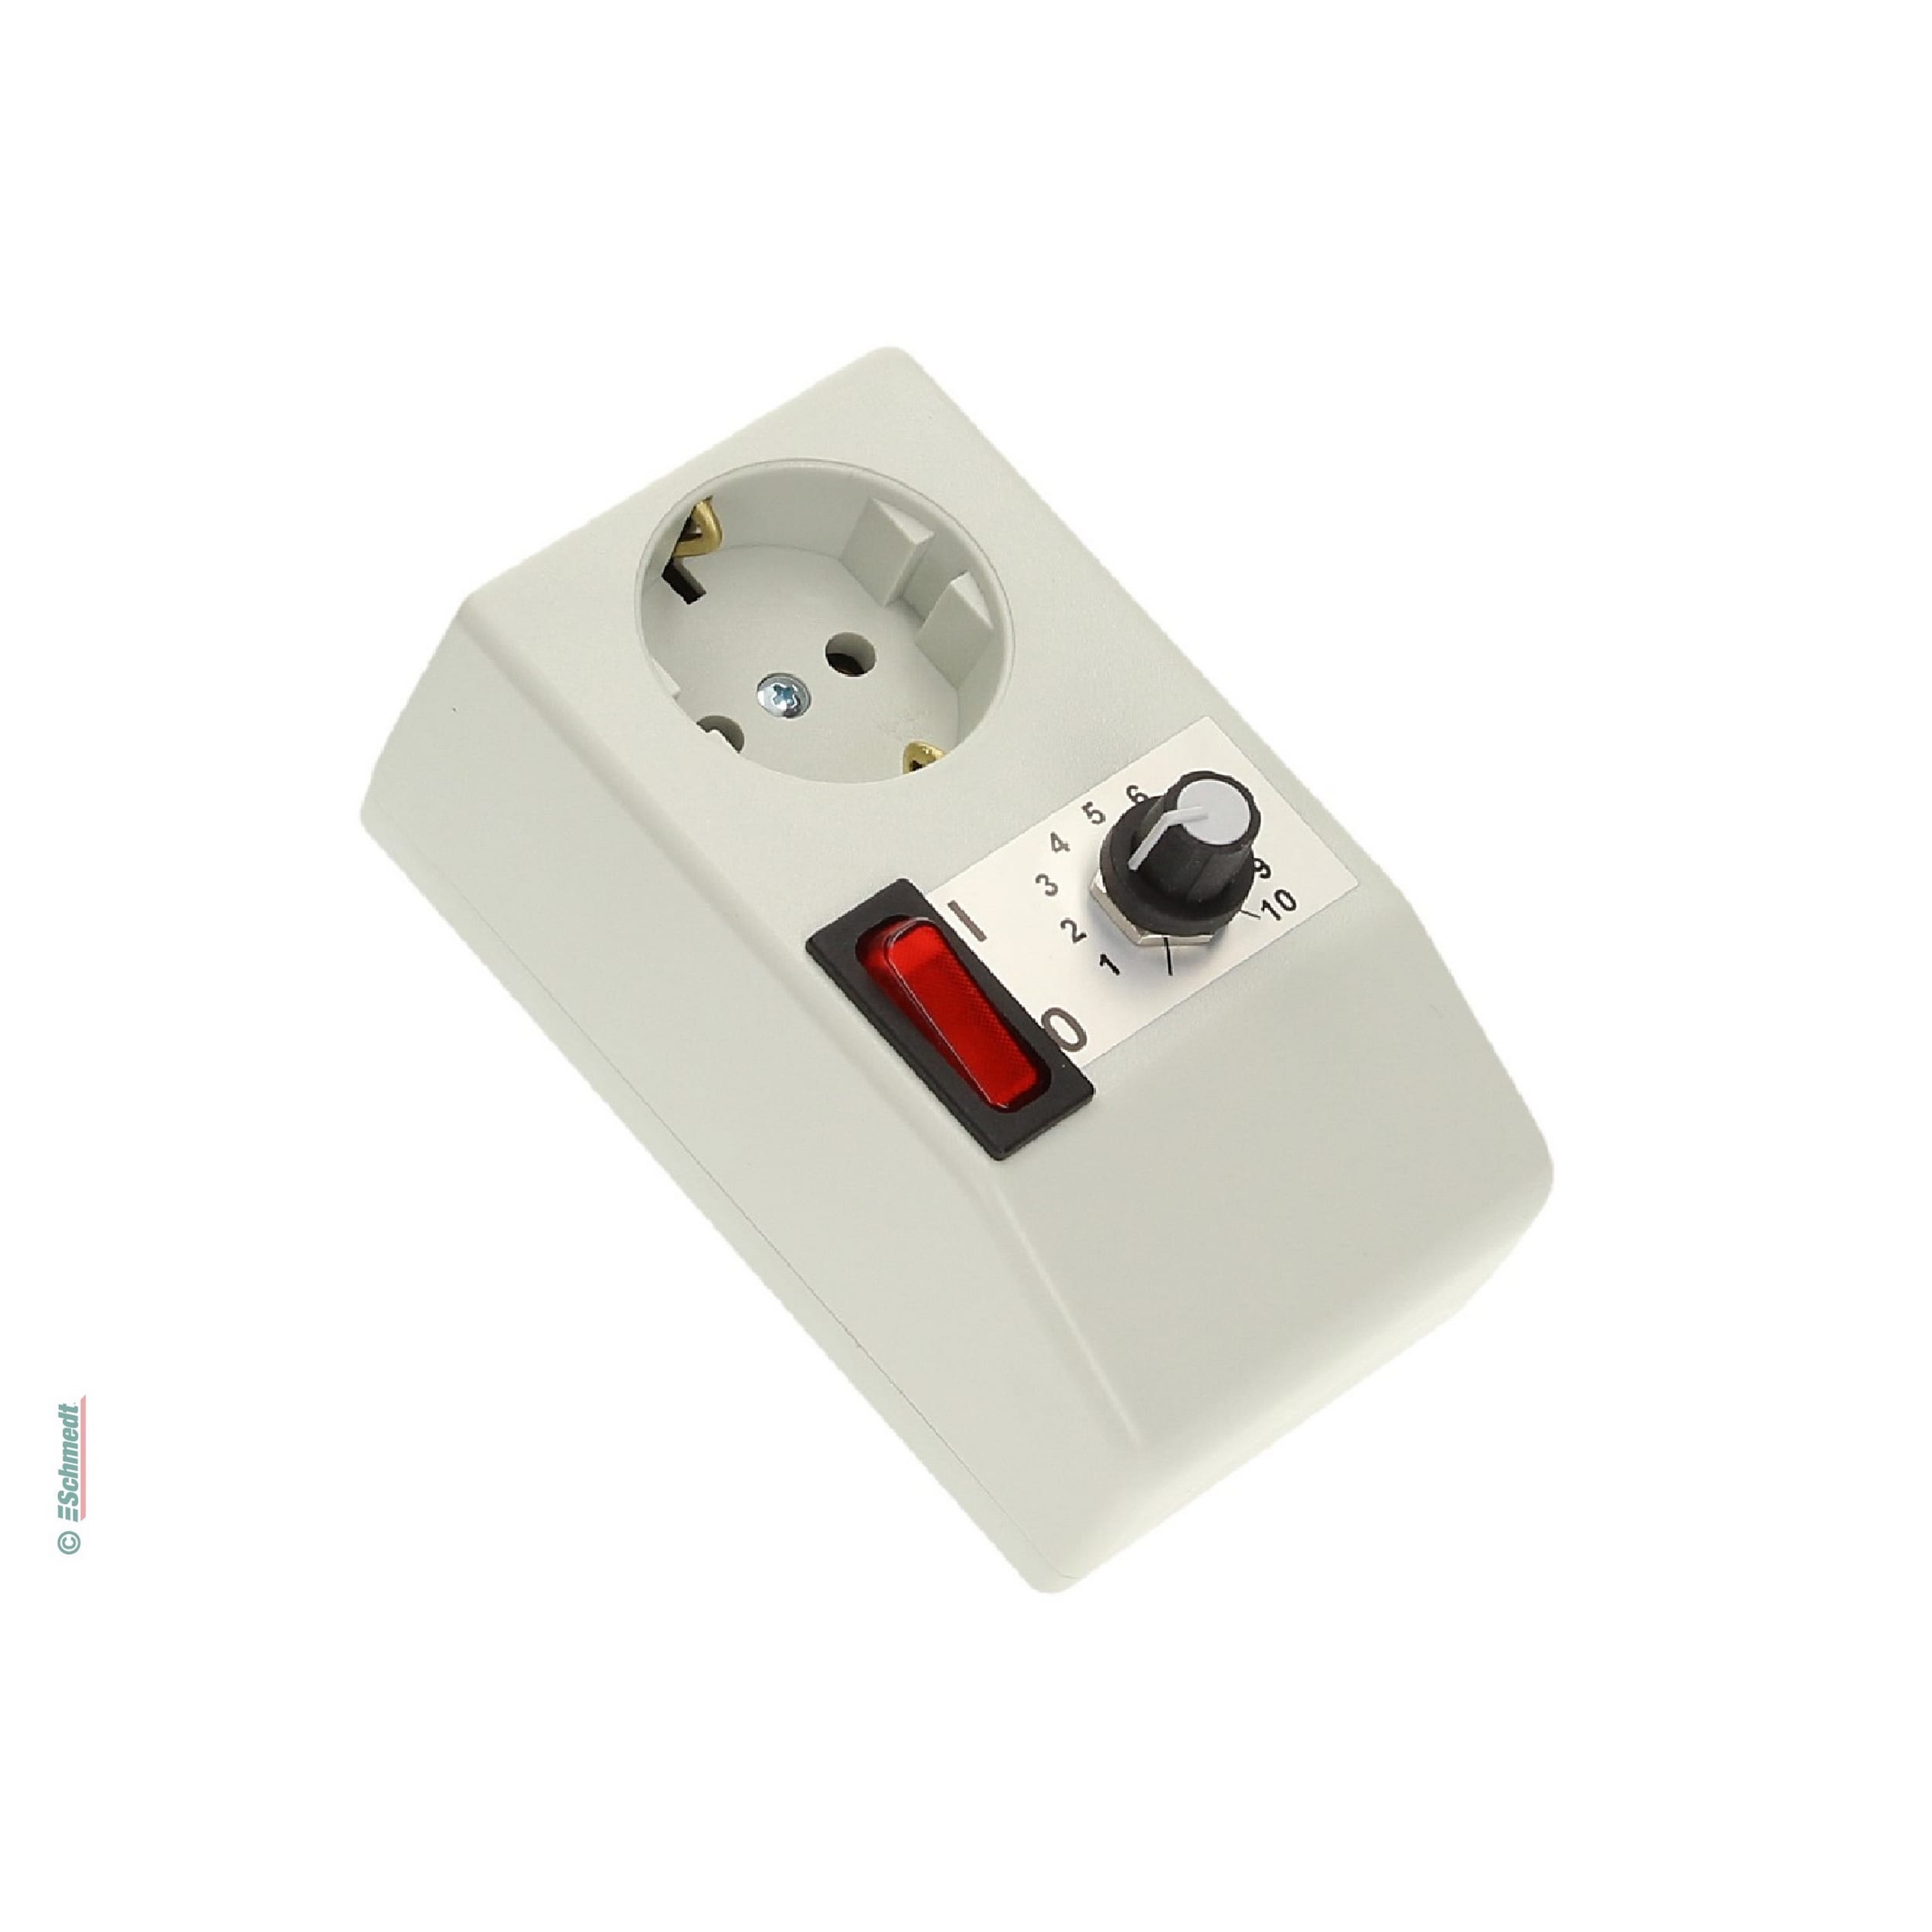 Termostato con enchufe con toma de tierra - para el control de los aparatos de calefacción - Aplicación: para el control de la temperatura d... - imagen-1